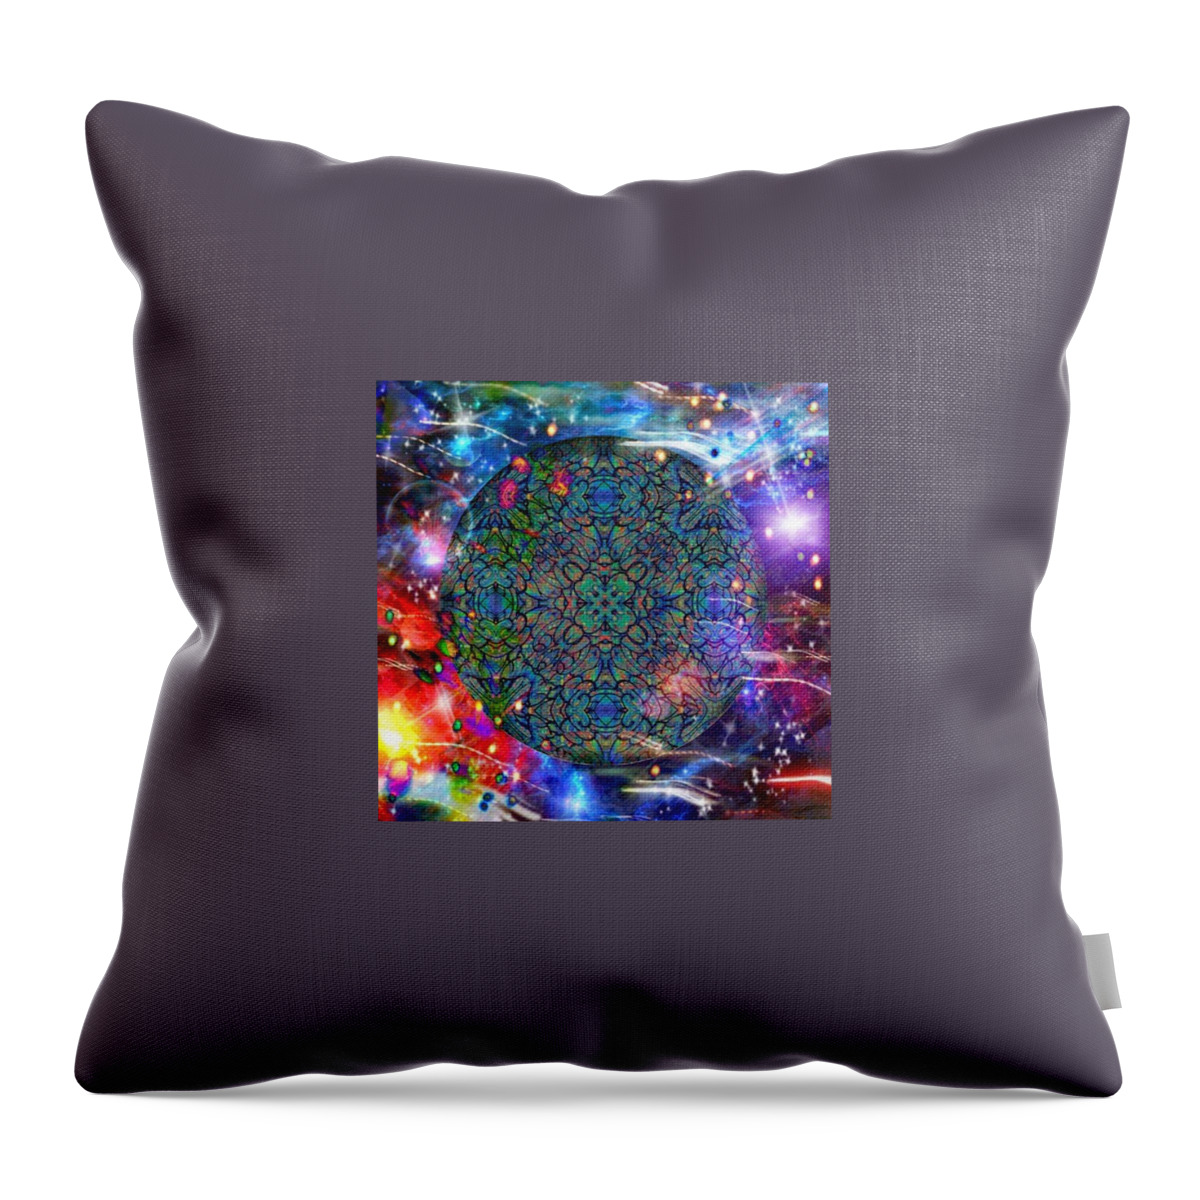 Digital Art Throw Pillow featuring the digital art New Earth Rising by Karen Buford